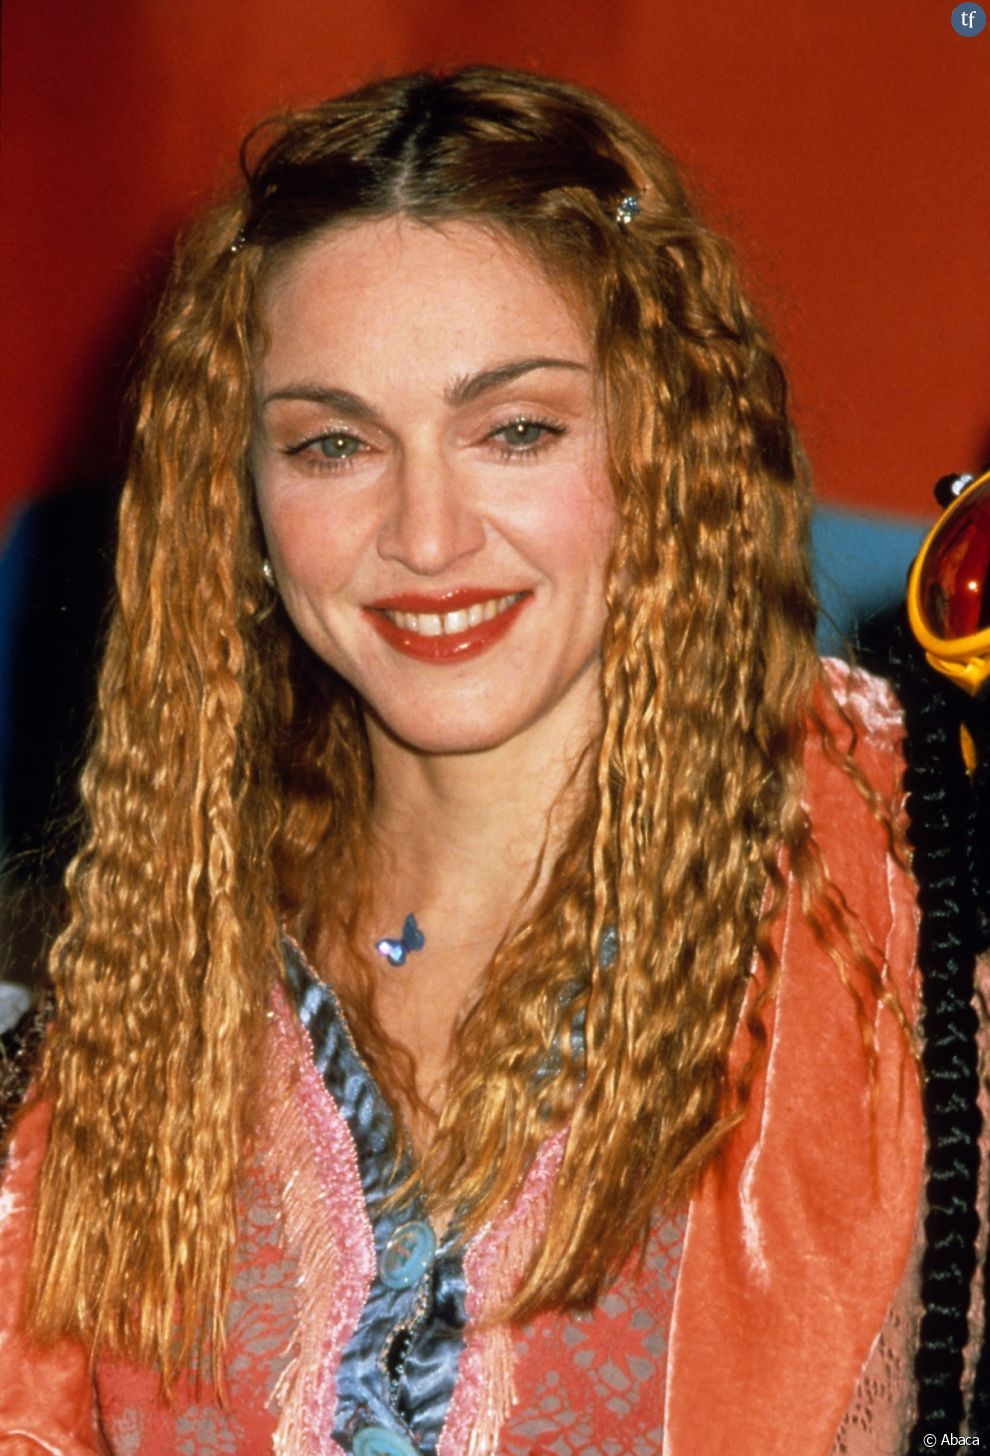 Dans ce billet d&#039;humeur épicé, Madonna affirme &quot;tenir tête au patriarcat&quot; et conserver la &quot;posture subversive&quot; qui a longtemps été la sienne, notamment durant ses coups d&#039;éclat provoc des années 80.